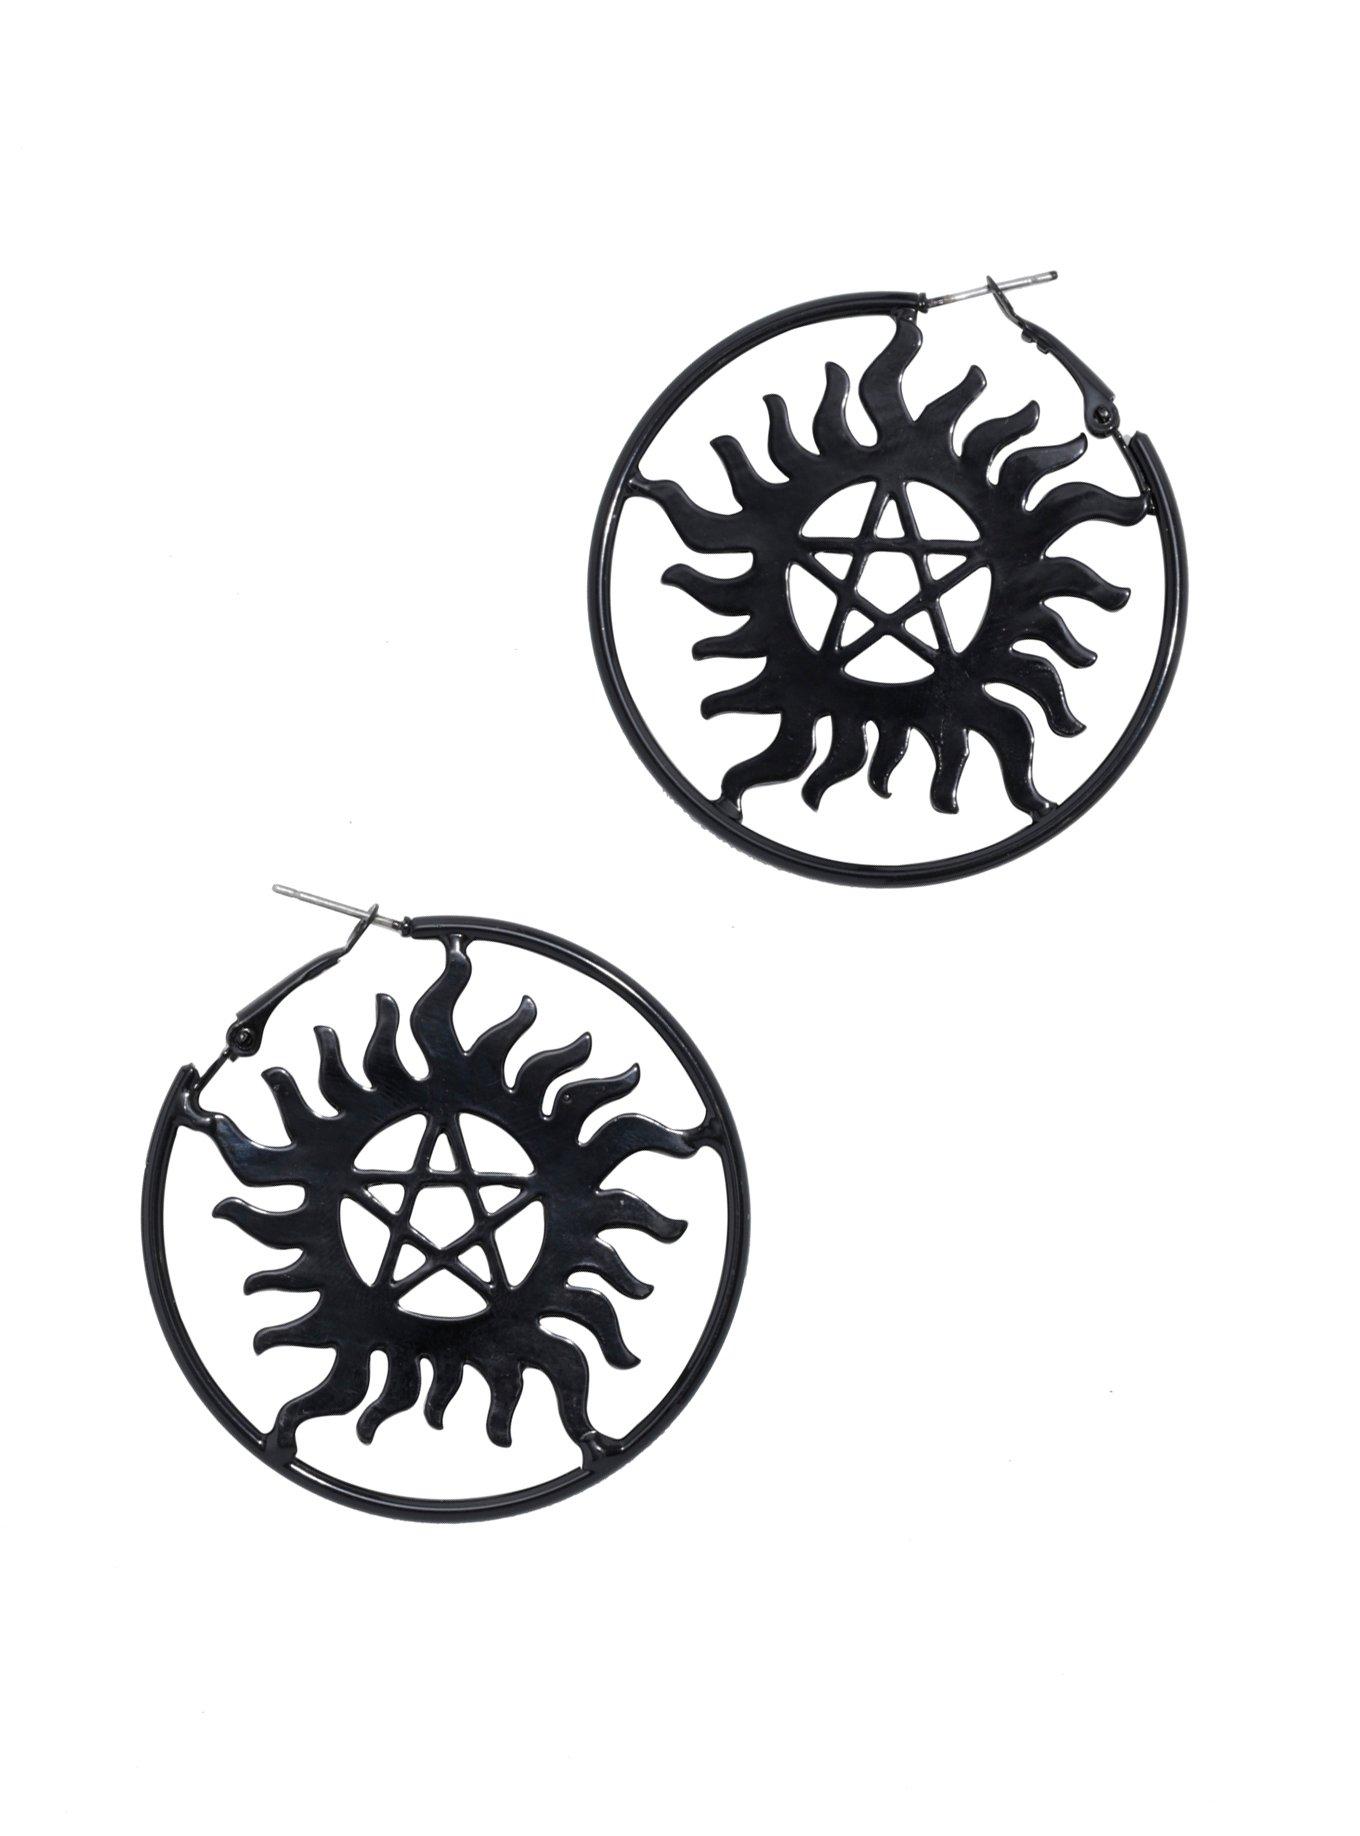 Supernatural Anti-Possession Symbol Hoop Earrings, , hi-res